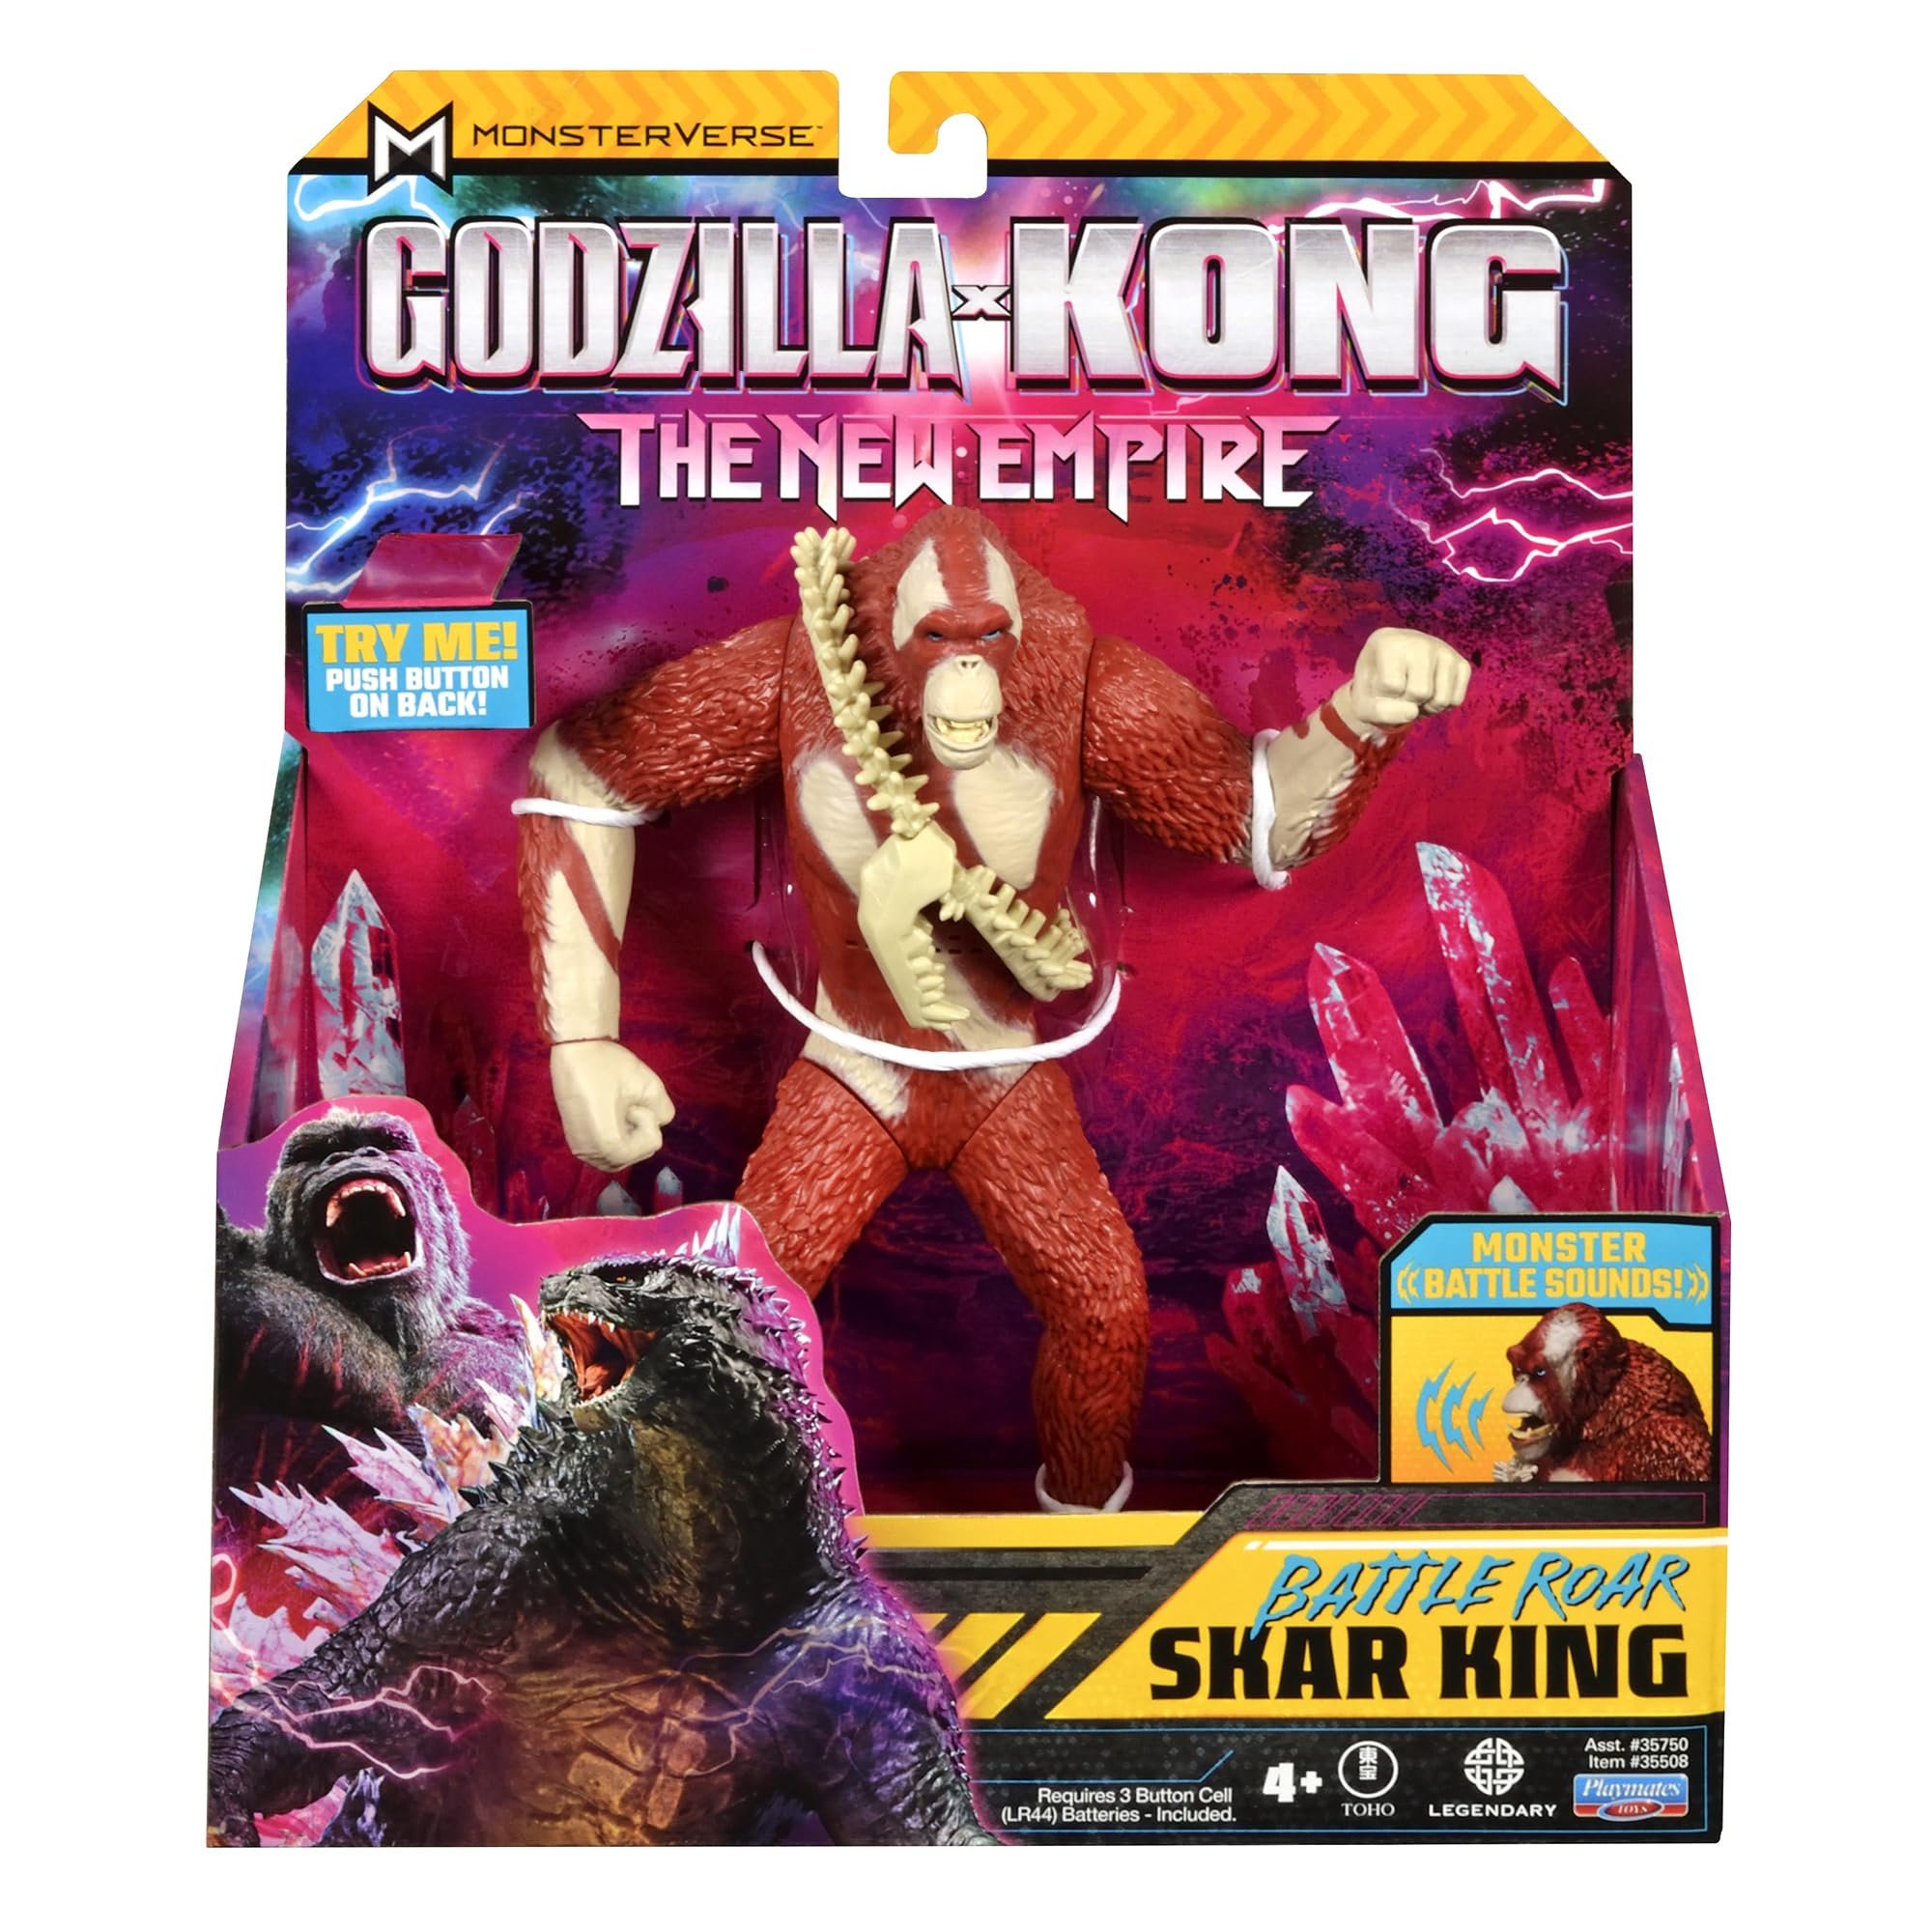 Monsterverse Godzilla vs Kong The New Empire akční figurka bitevní řev Skar King 18 cm